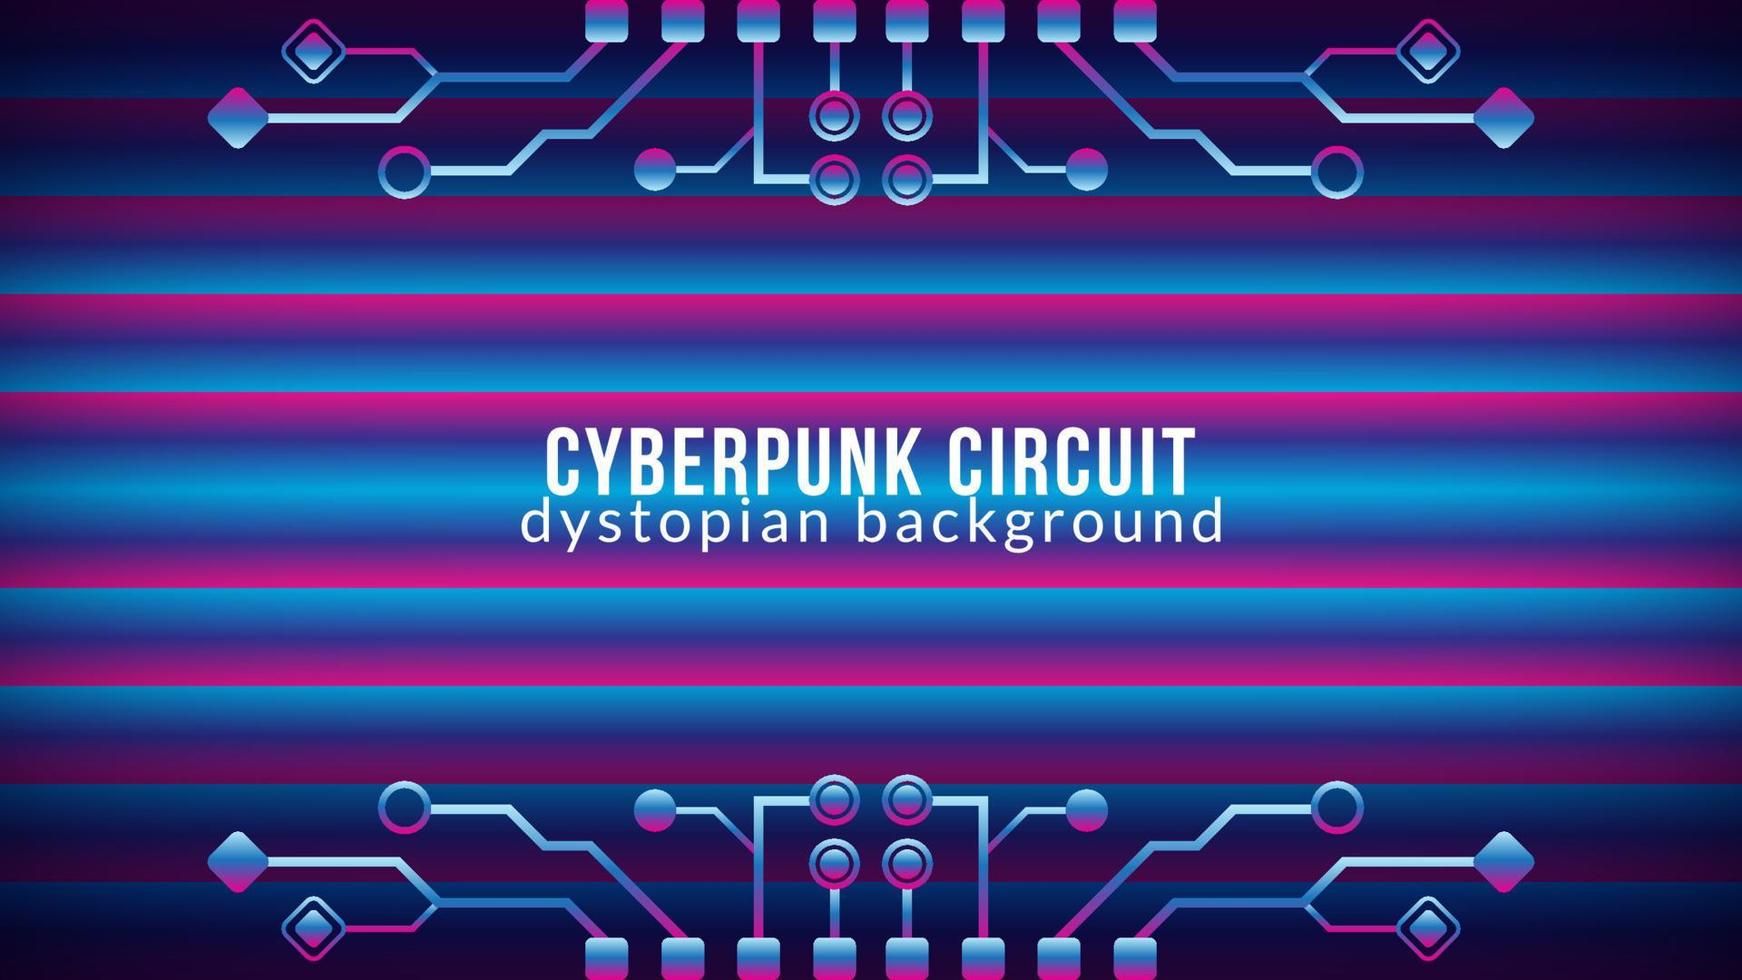 circuito cyberpunk con patrón de barra de degradado. Ilustración de vector de forma de árbol electrónico distópico. plantilla de diseño de fondo abstracto. tema de color degradado azul rosa púrpura violeta.